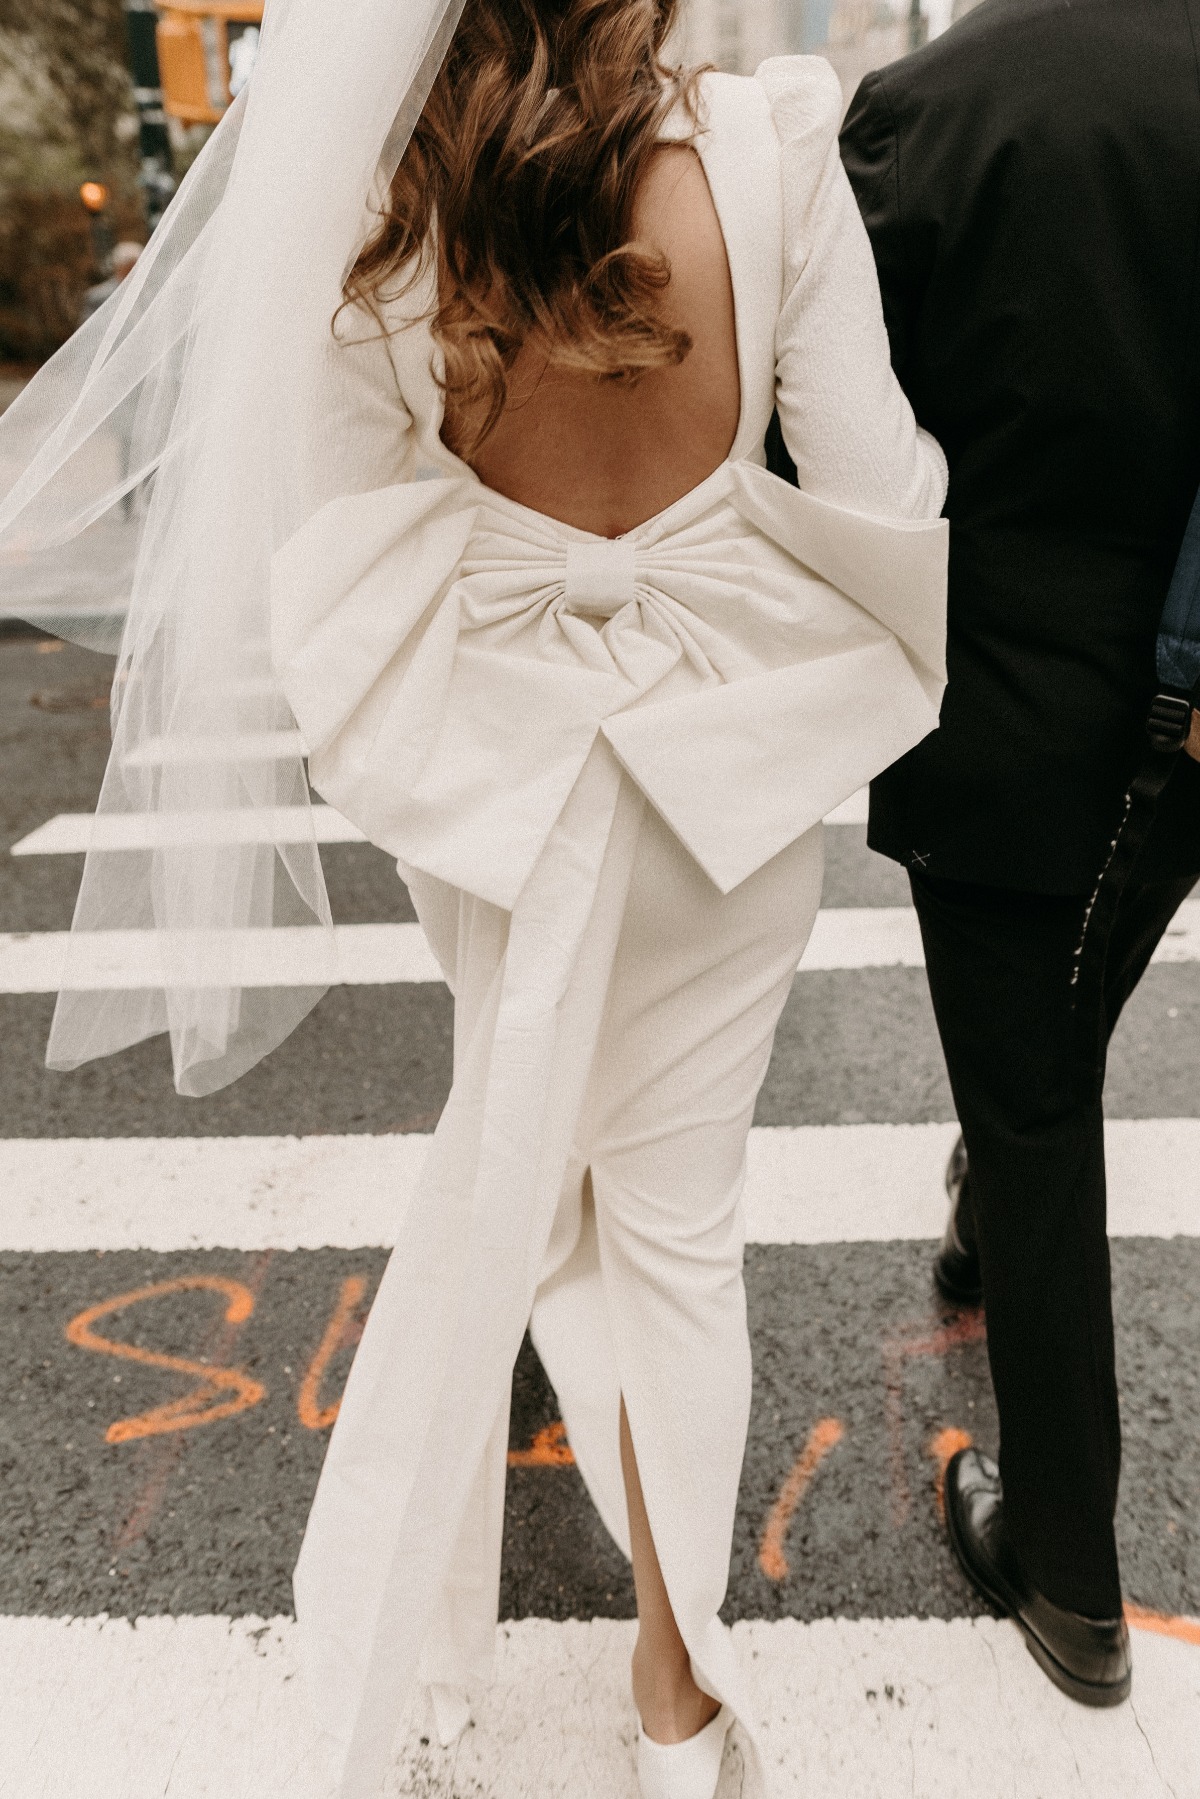 bow-backed wedding dress